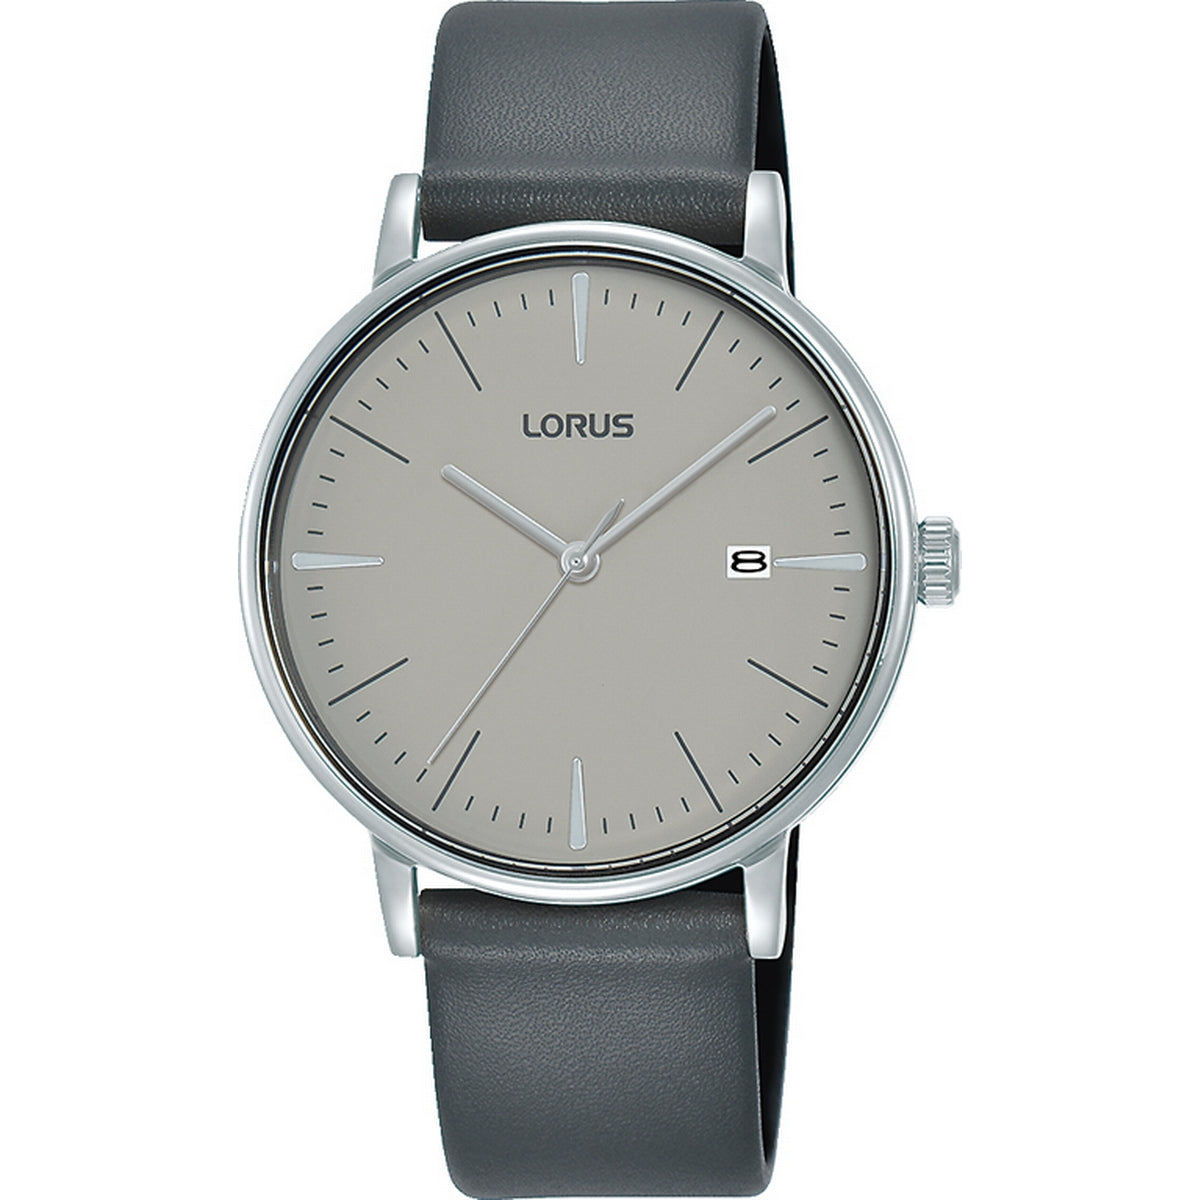 Versandhandel im Ausland zum niedrigsten Preis! lorus quartz stainless grey Moores Jewellers gents dial steel watch - strap